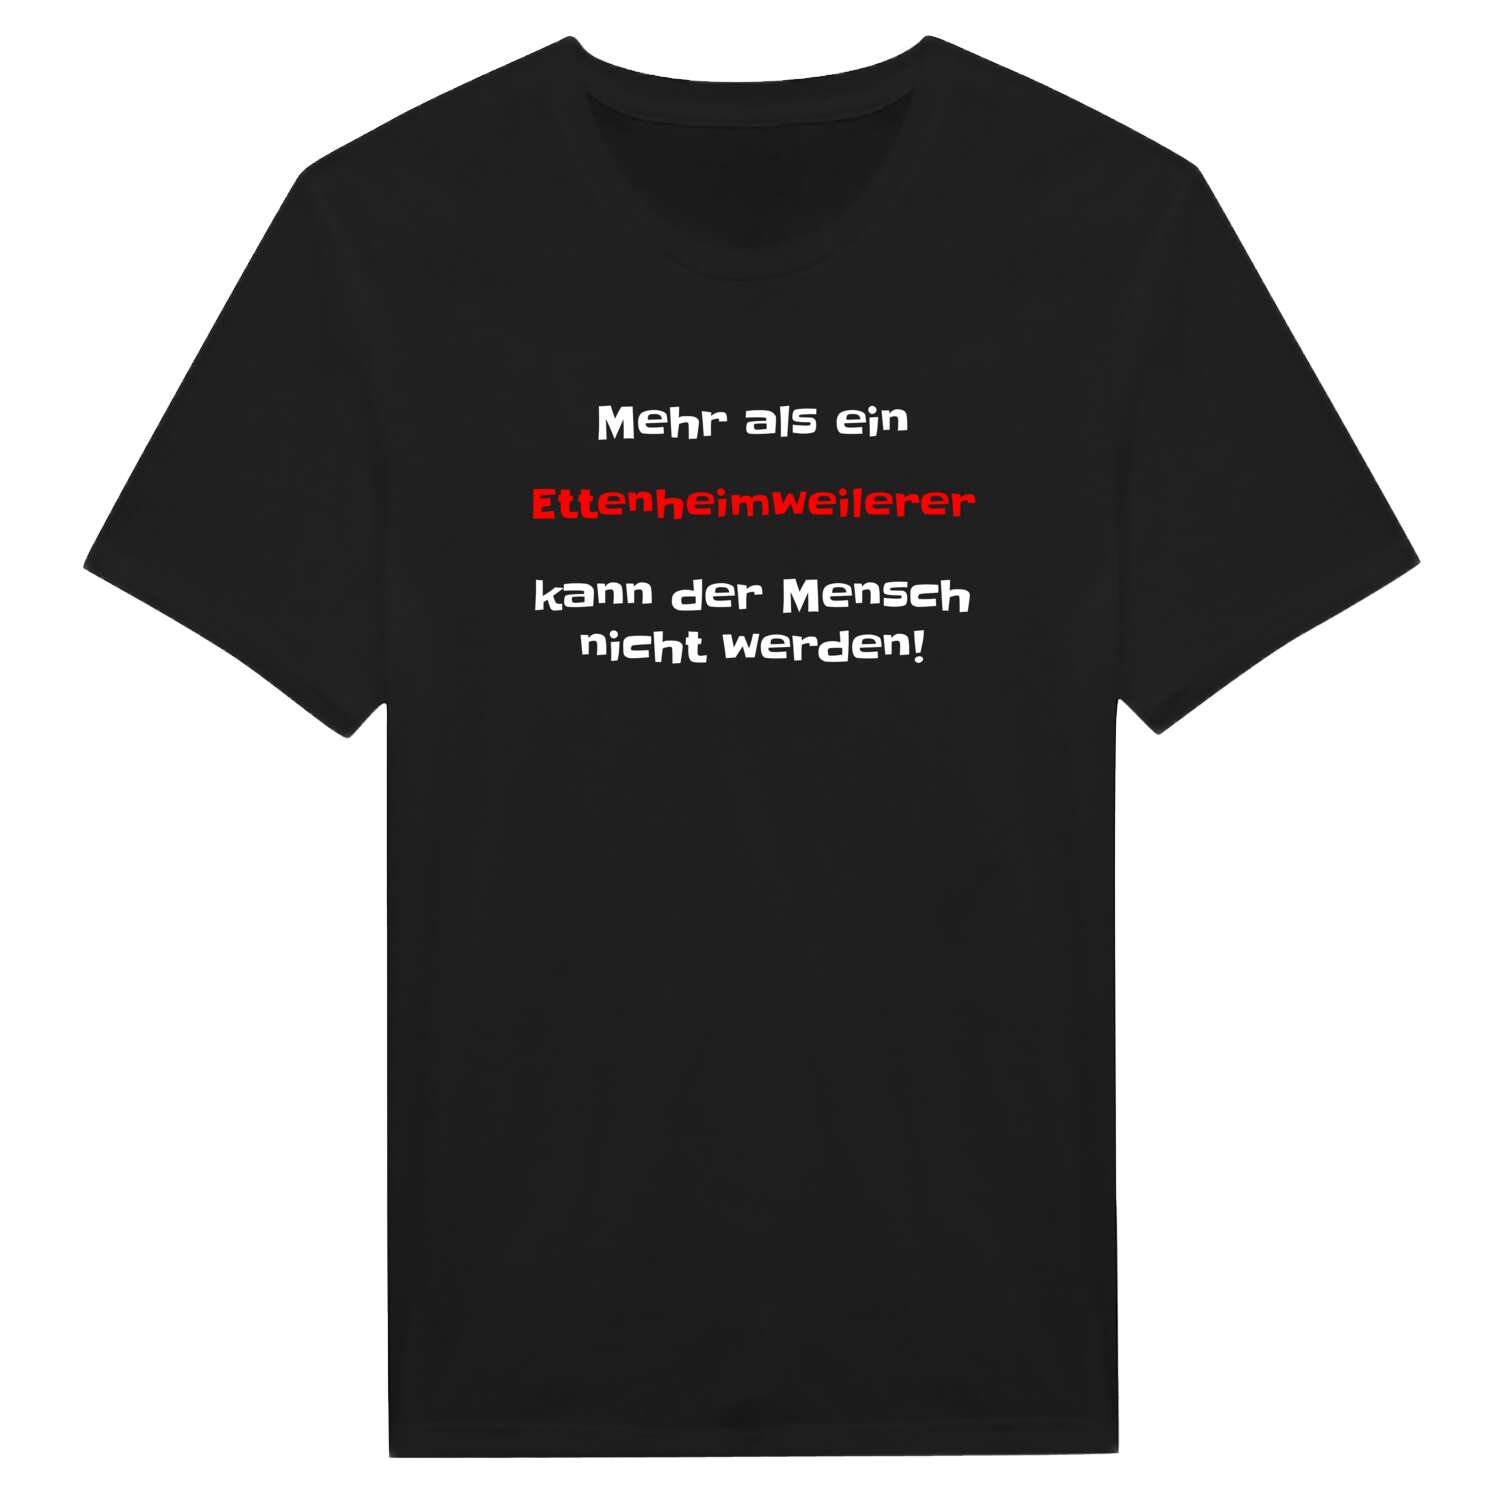 Ettenheimweiler T-Shirt »Mehr als ein«